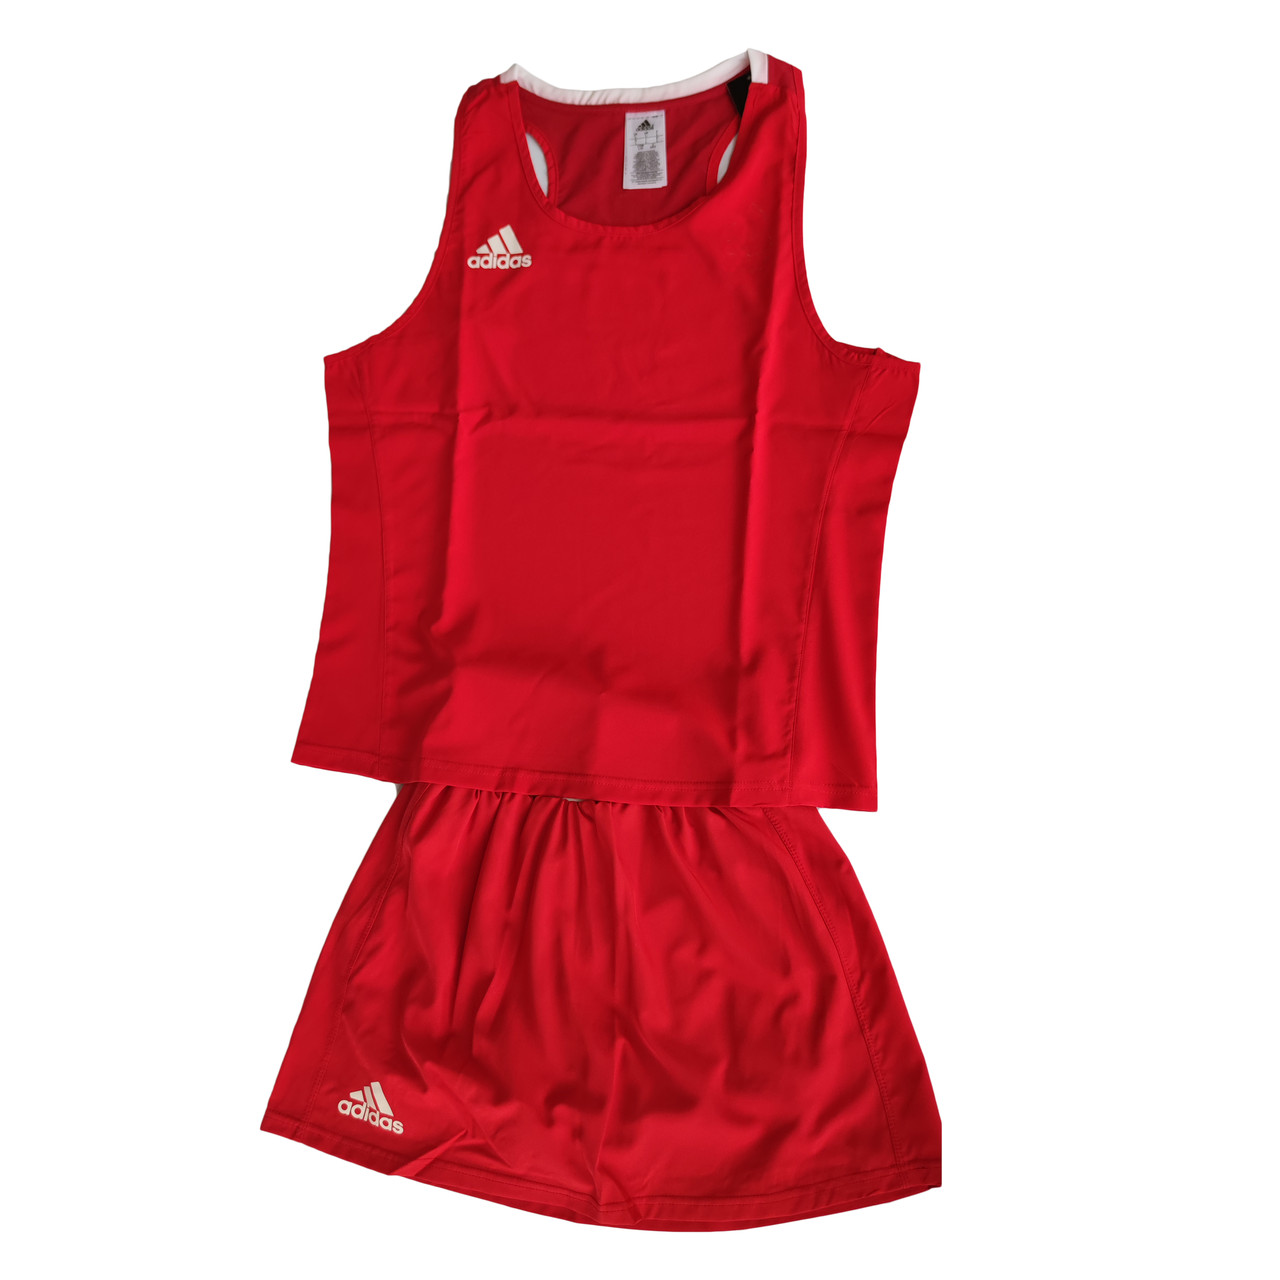 Жіноча форма для занять боксом Olympic Woman шорти-спідниця + майка  ⁇  червона  ⁇  ADIDAS ADIAIBA20TW ADIAIBA20SKW